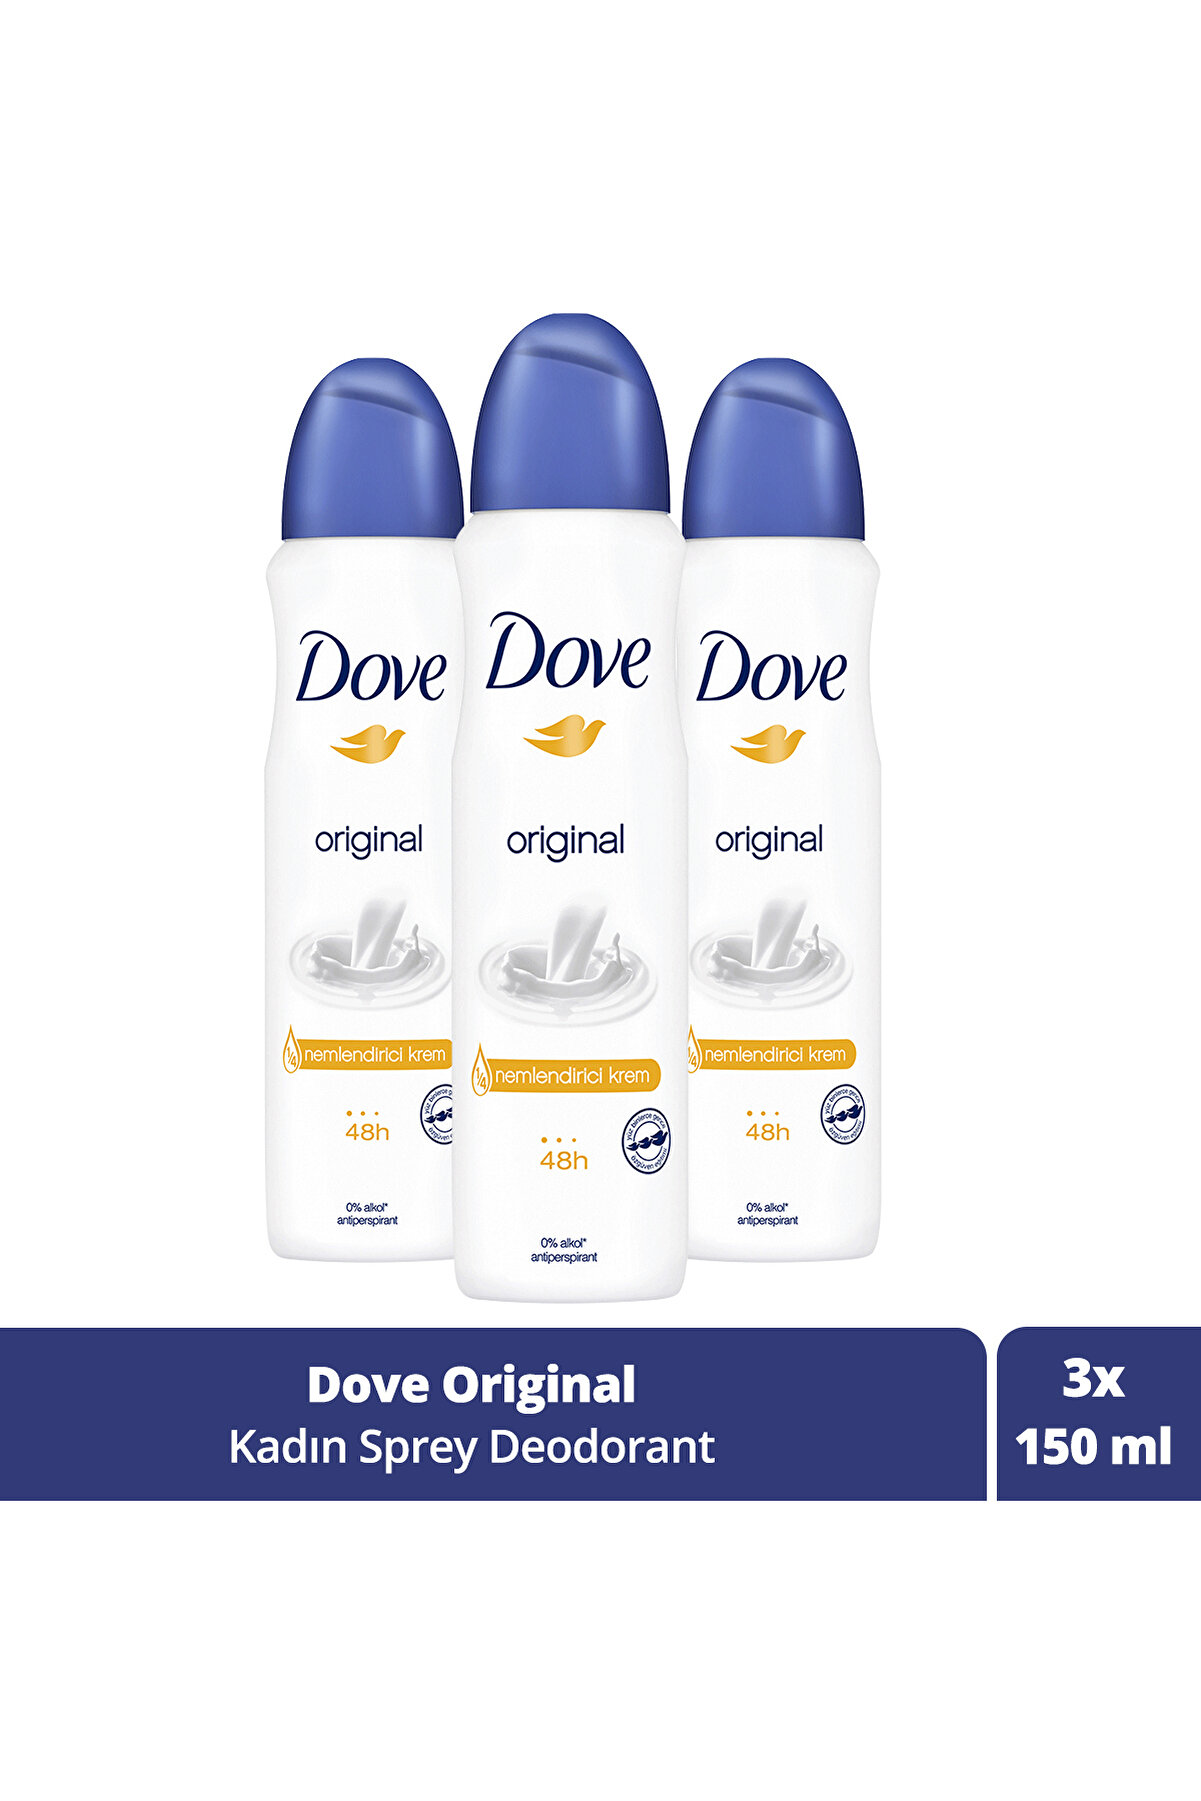 Dove Kadın Sprey Deodorant Original 1/4 Nemlendirici Krem Etkili 150 Ml X3 Adet